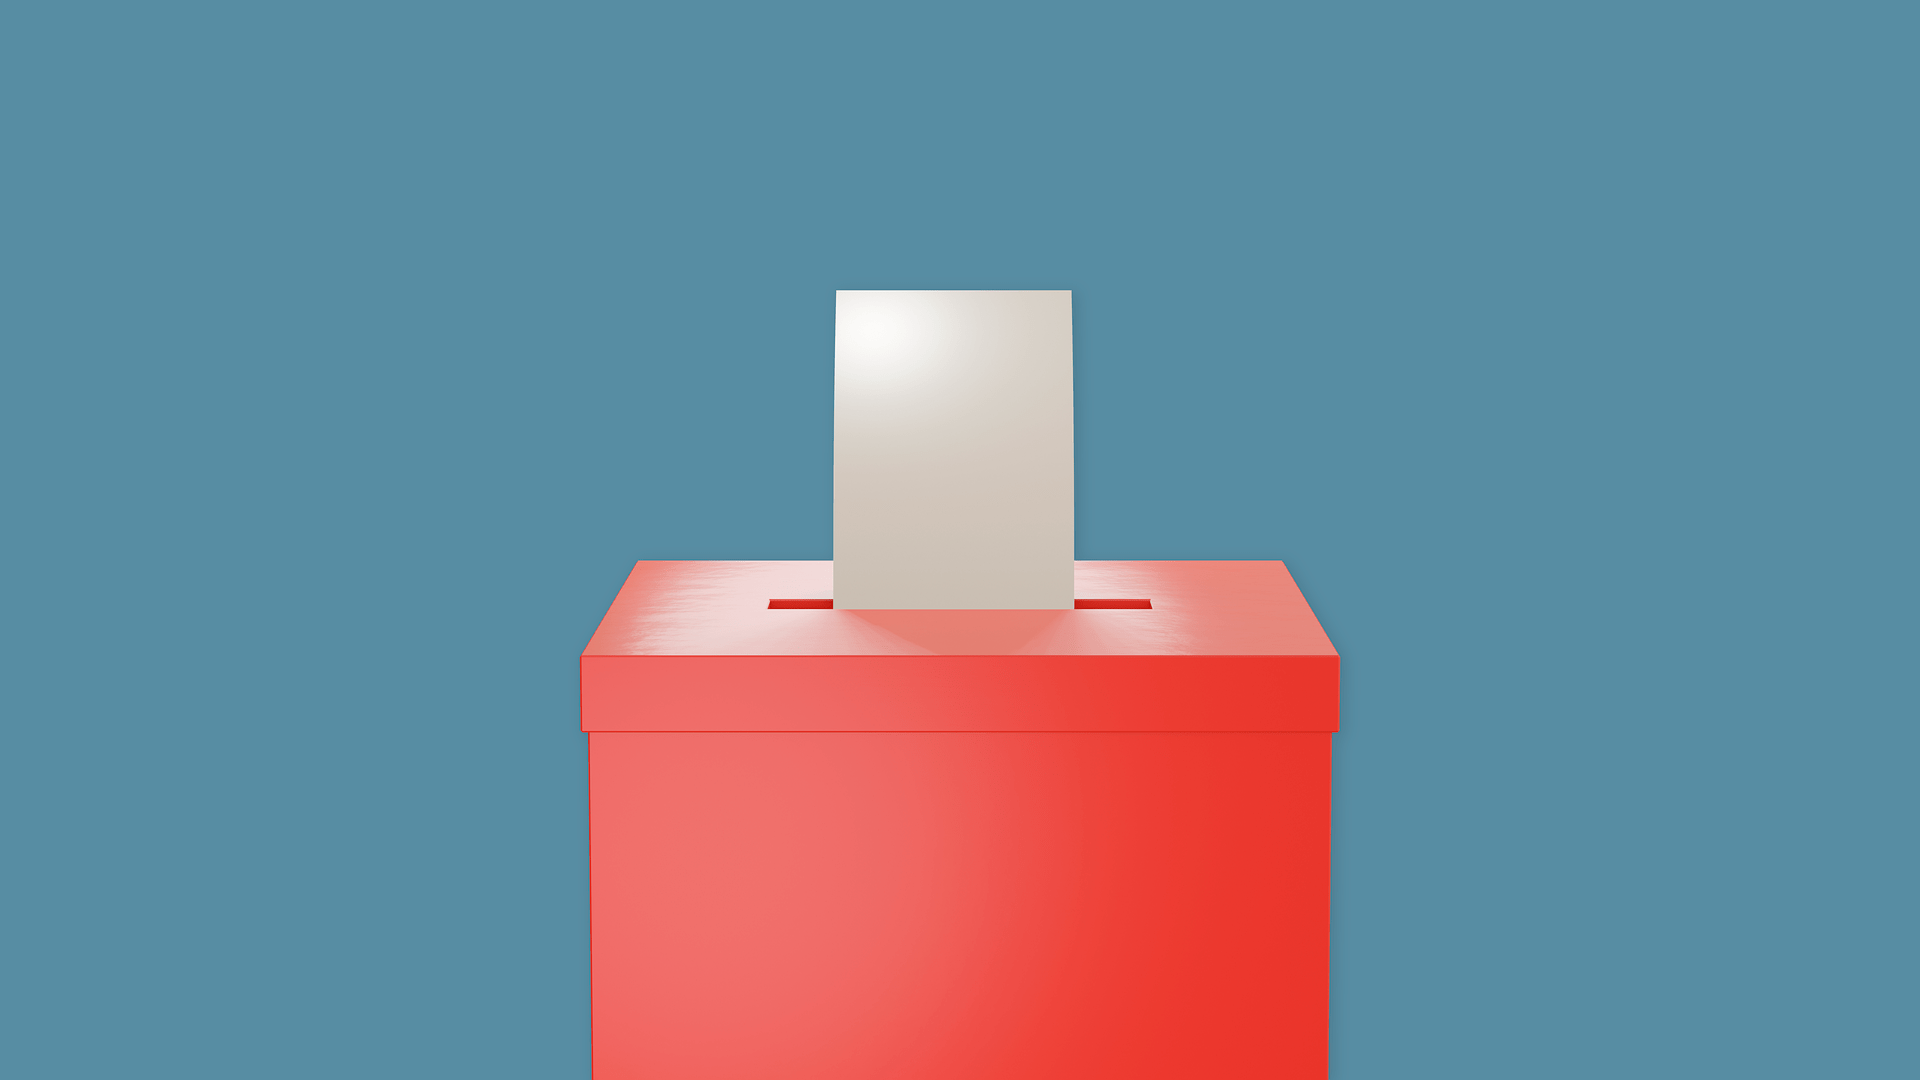 Remplacer les urnes par des machines à voter présente des risques cyber. // Source : Thor Deichmann / Pixabay 